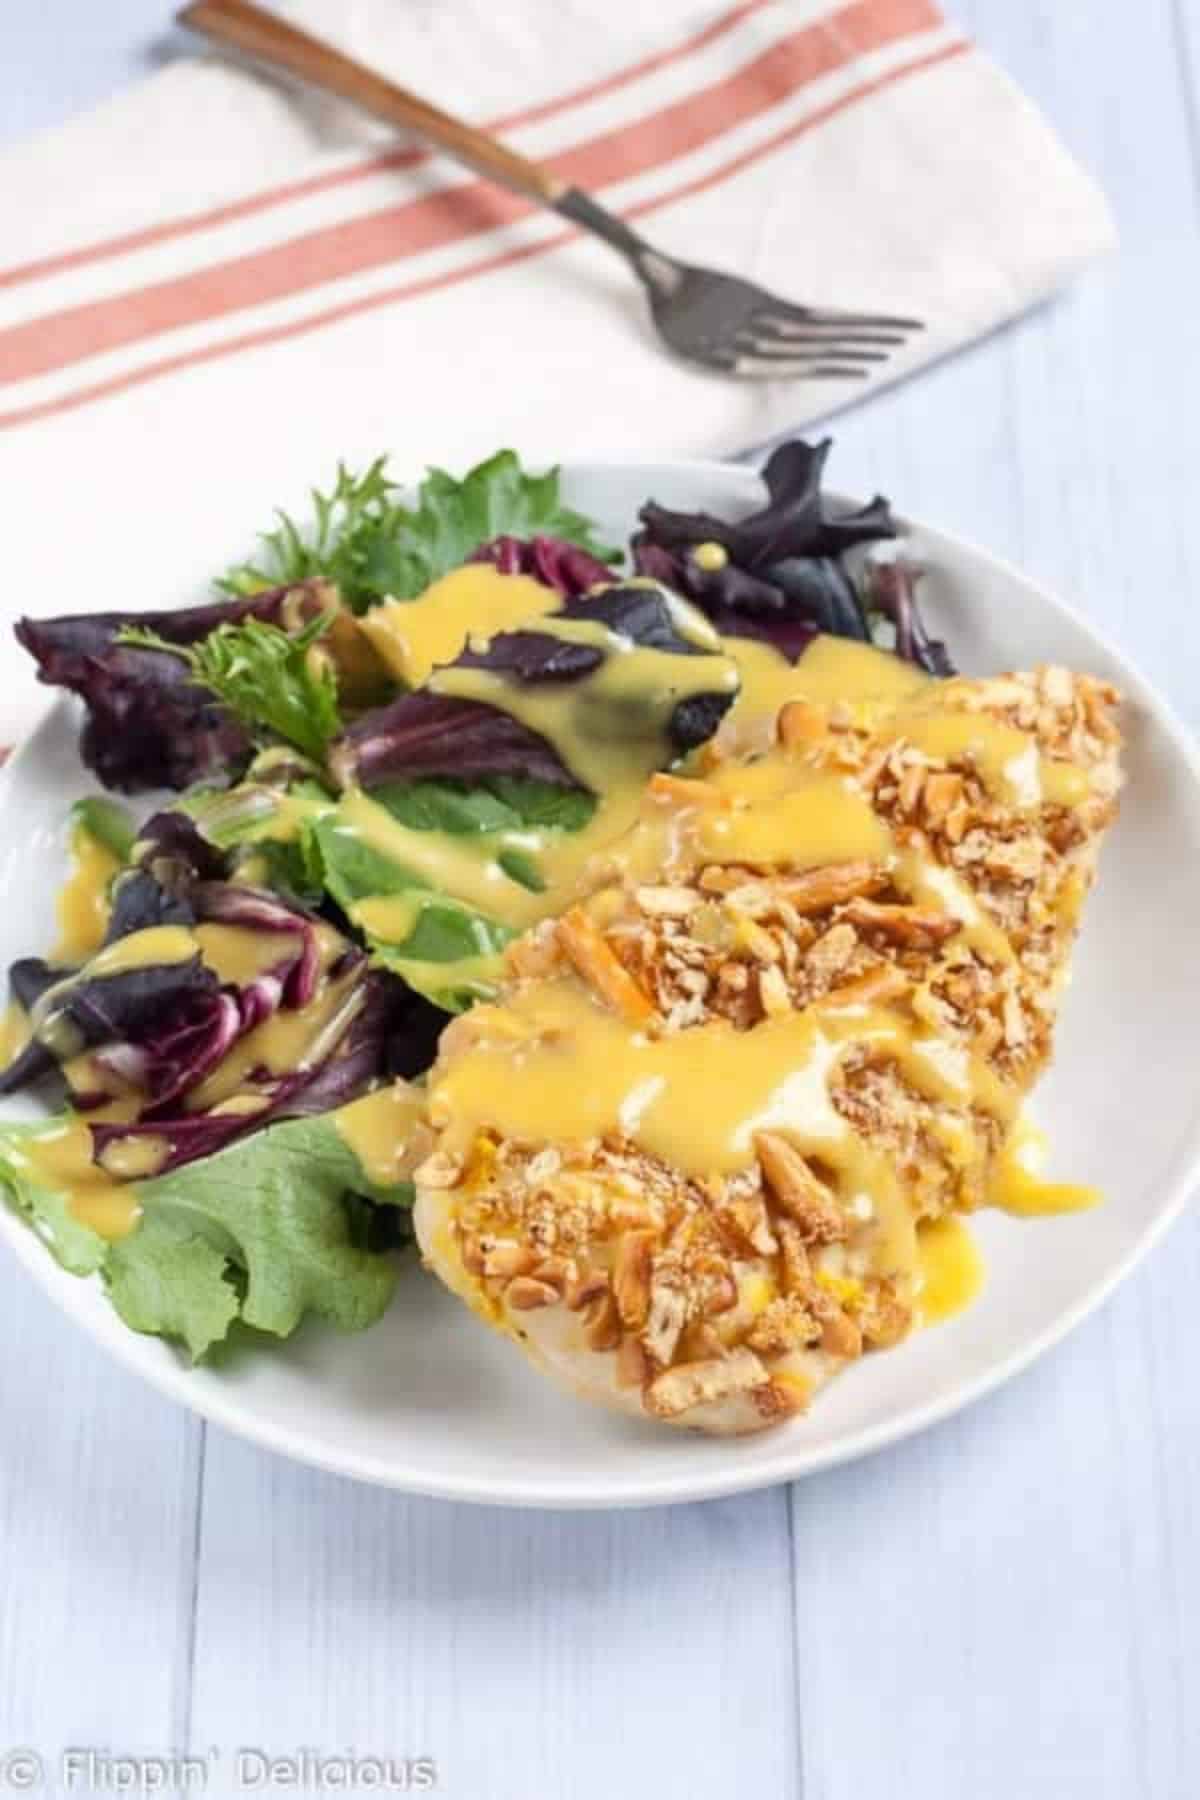 Crispy Gluten-Free Pretzel Chicken with Honey Mustard with veggies on a white plate.